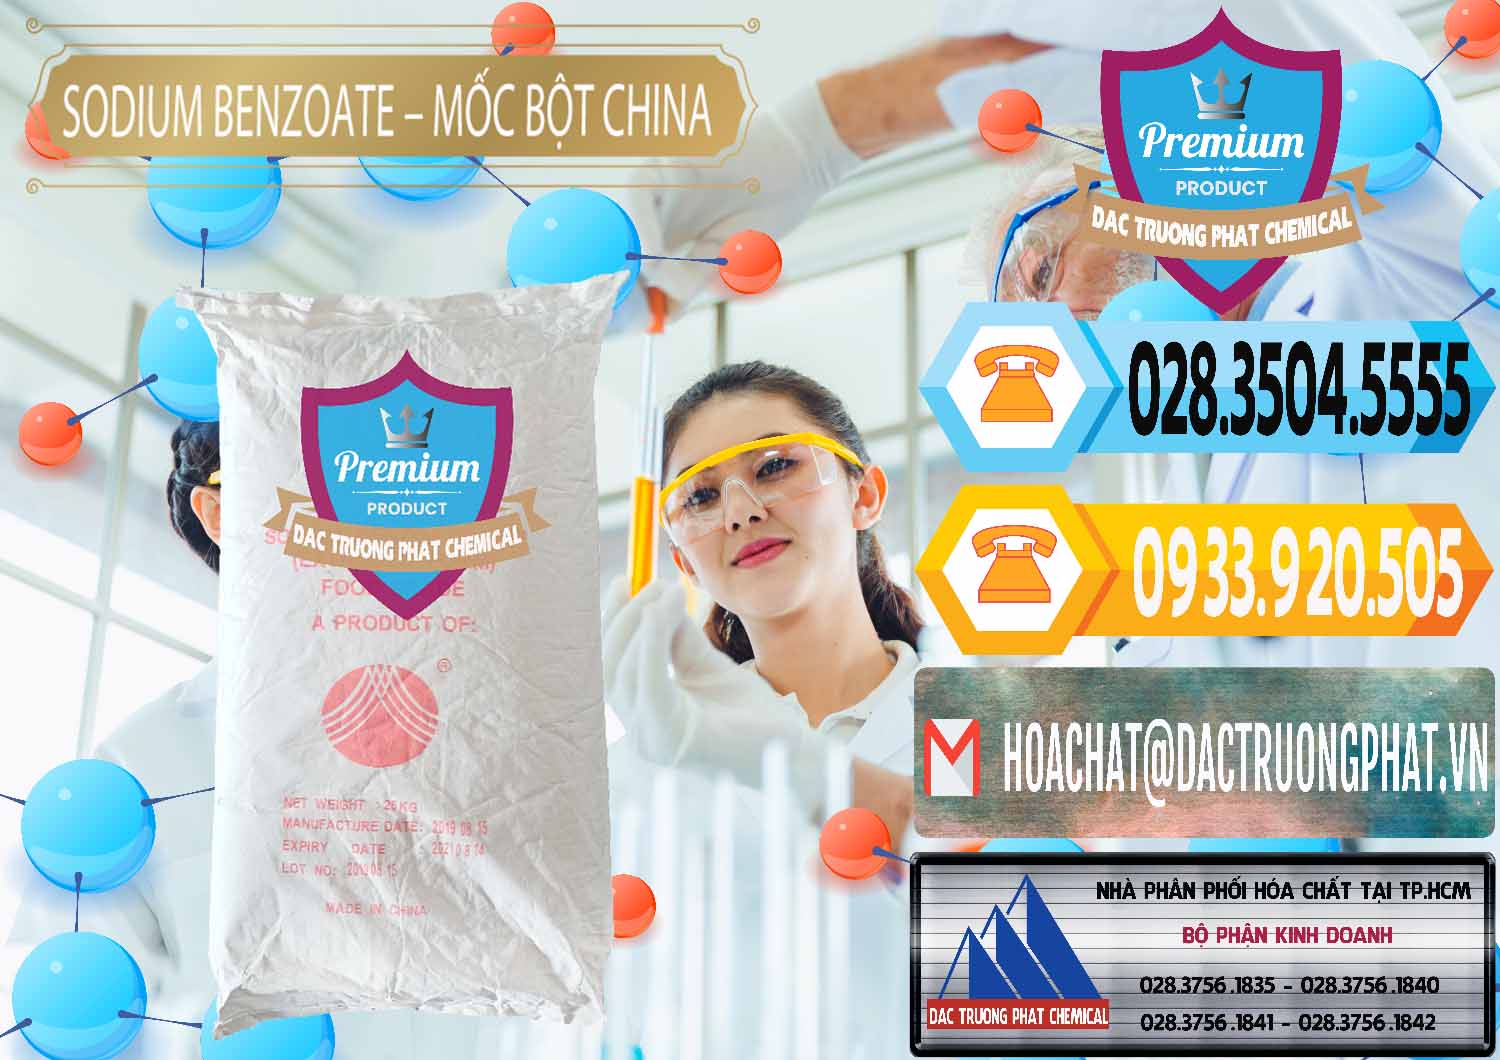 Đơn vị chuyên phân phối - bán Sodium Benzoate - Mốc Bột Chữ Cam Food Grade Trung Quốc China - 0135 - Cty chuyên phân phối _ cung ứng hóa chất tại TP.HCM - hoachattayrua.net